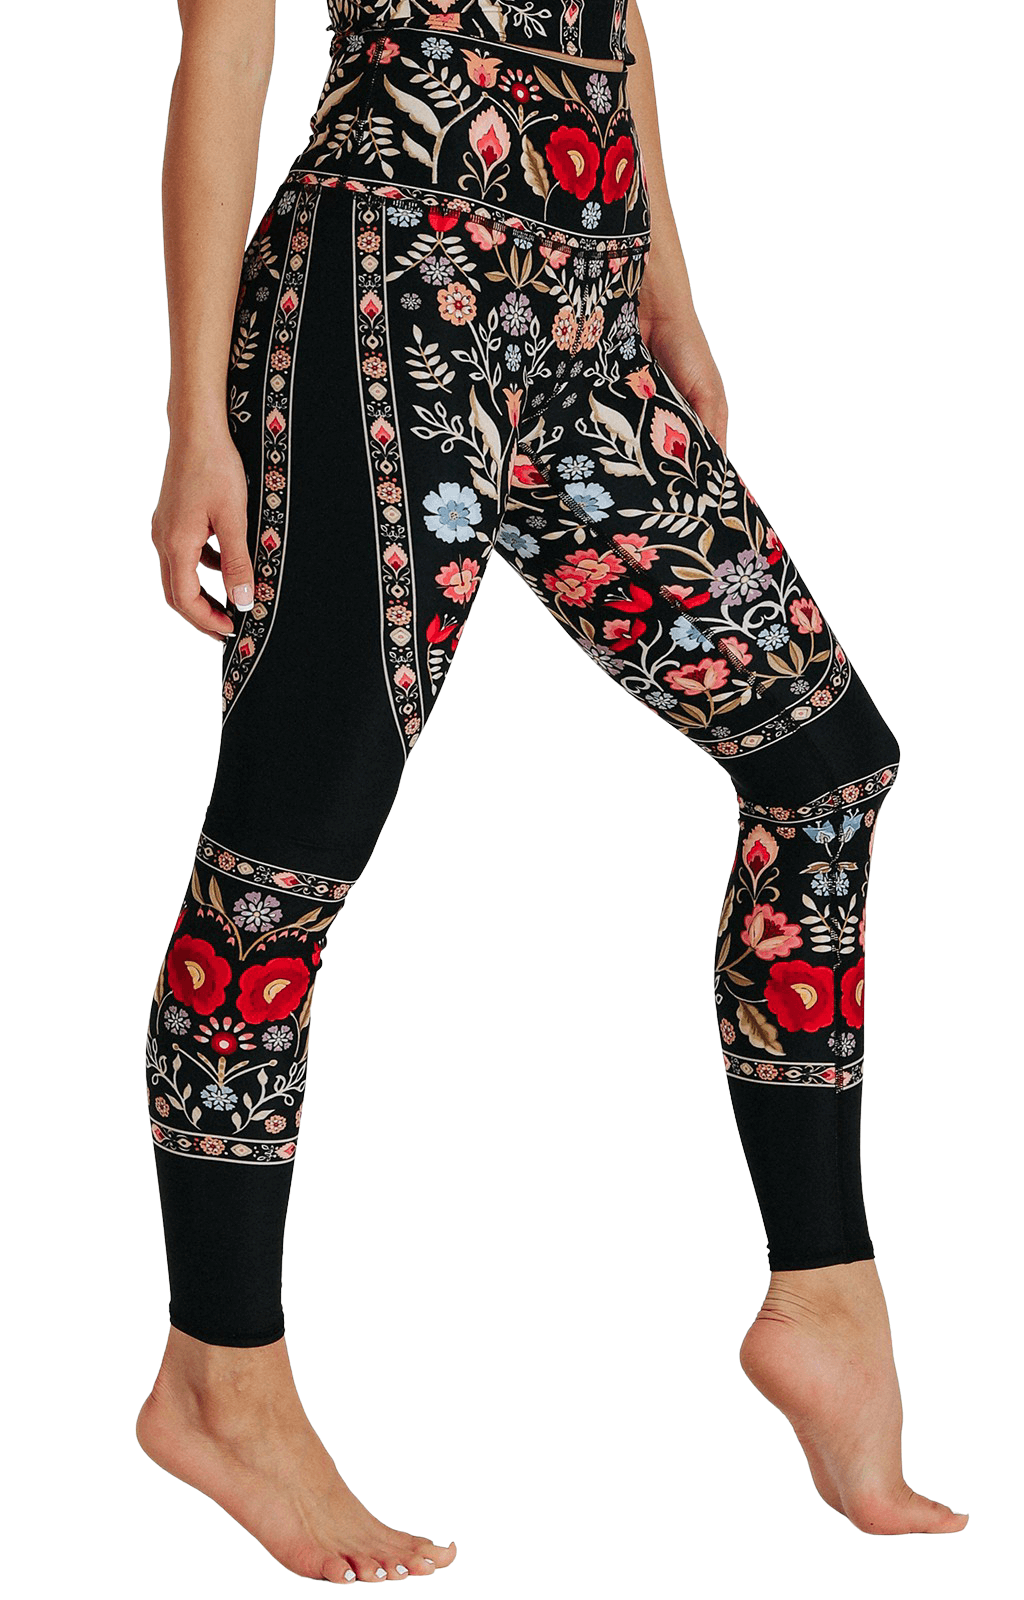 Rustica Printed Yoga Leggings